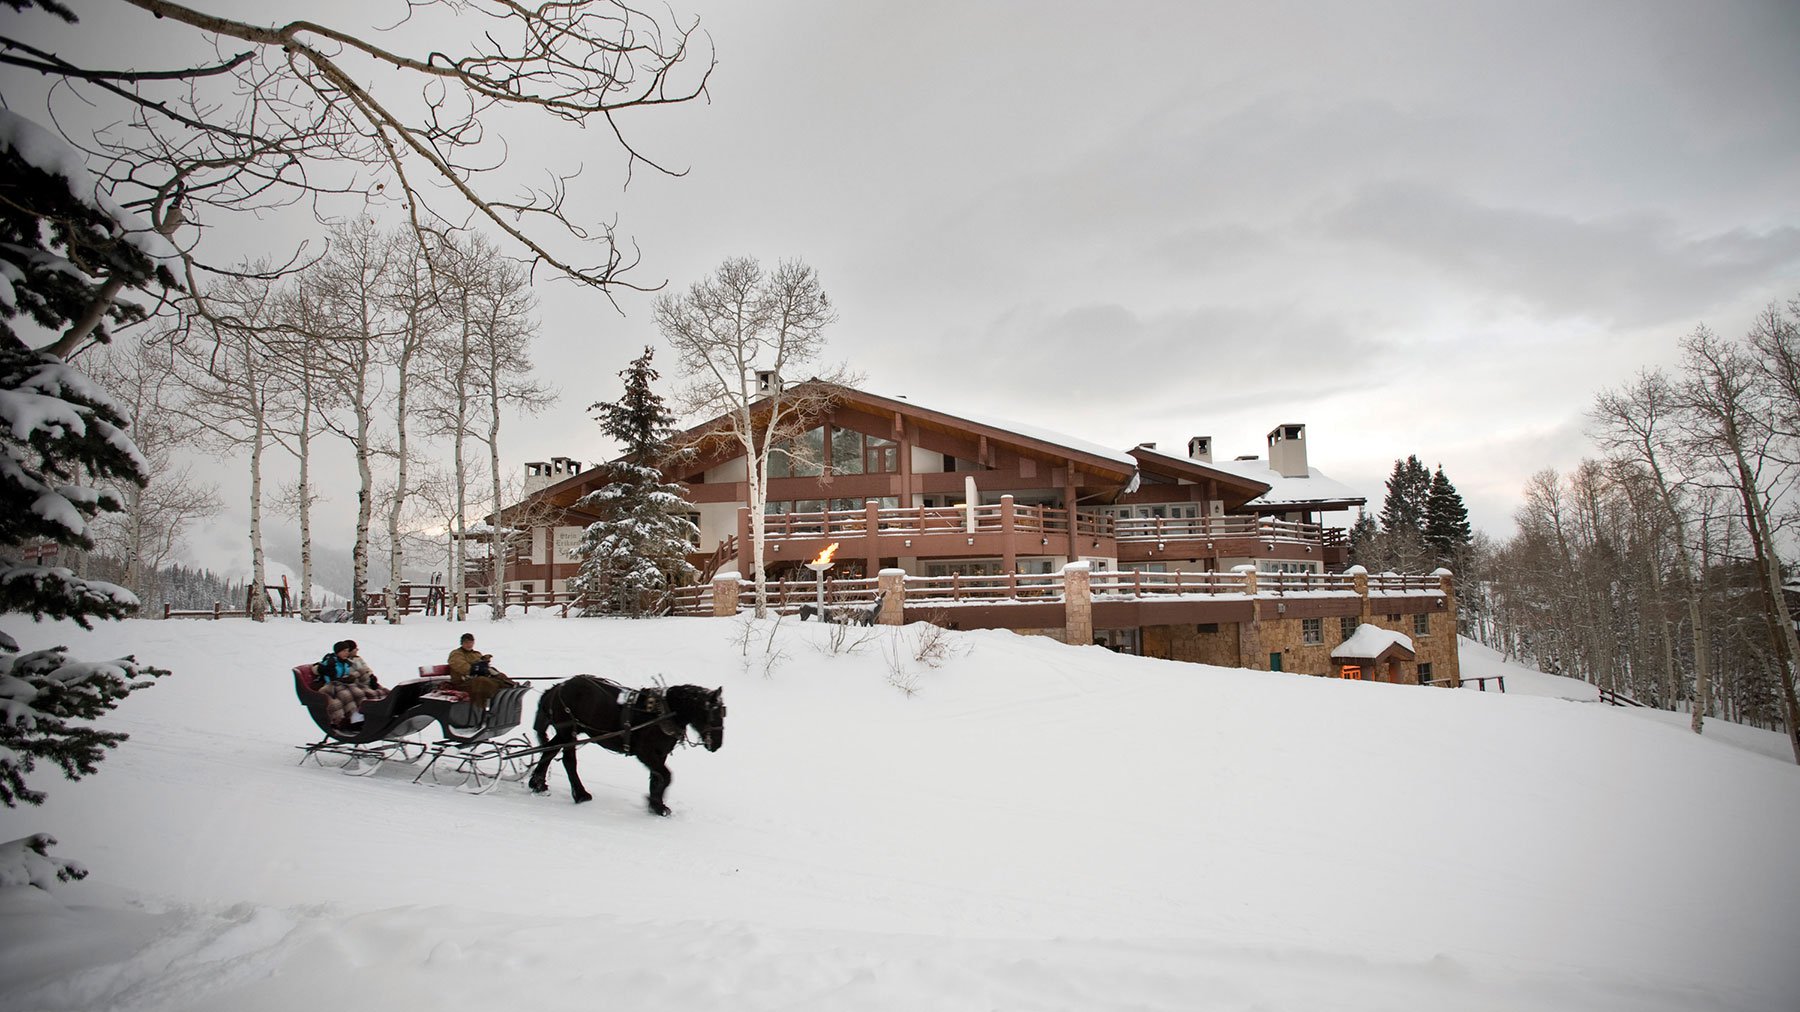 Winter Exterior of Stein Eriksen Lodge with horse drawn sleigh